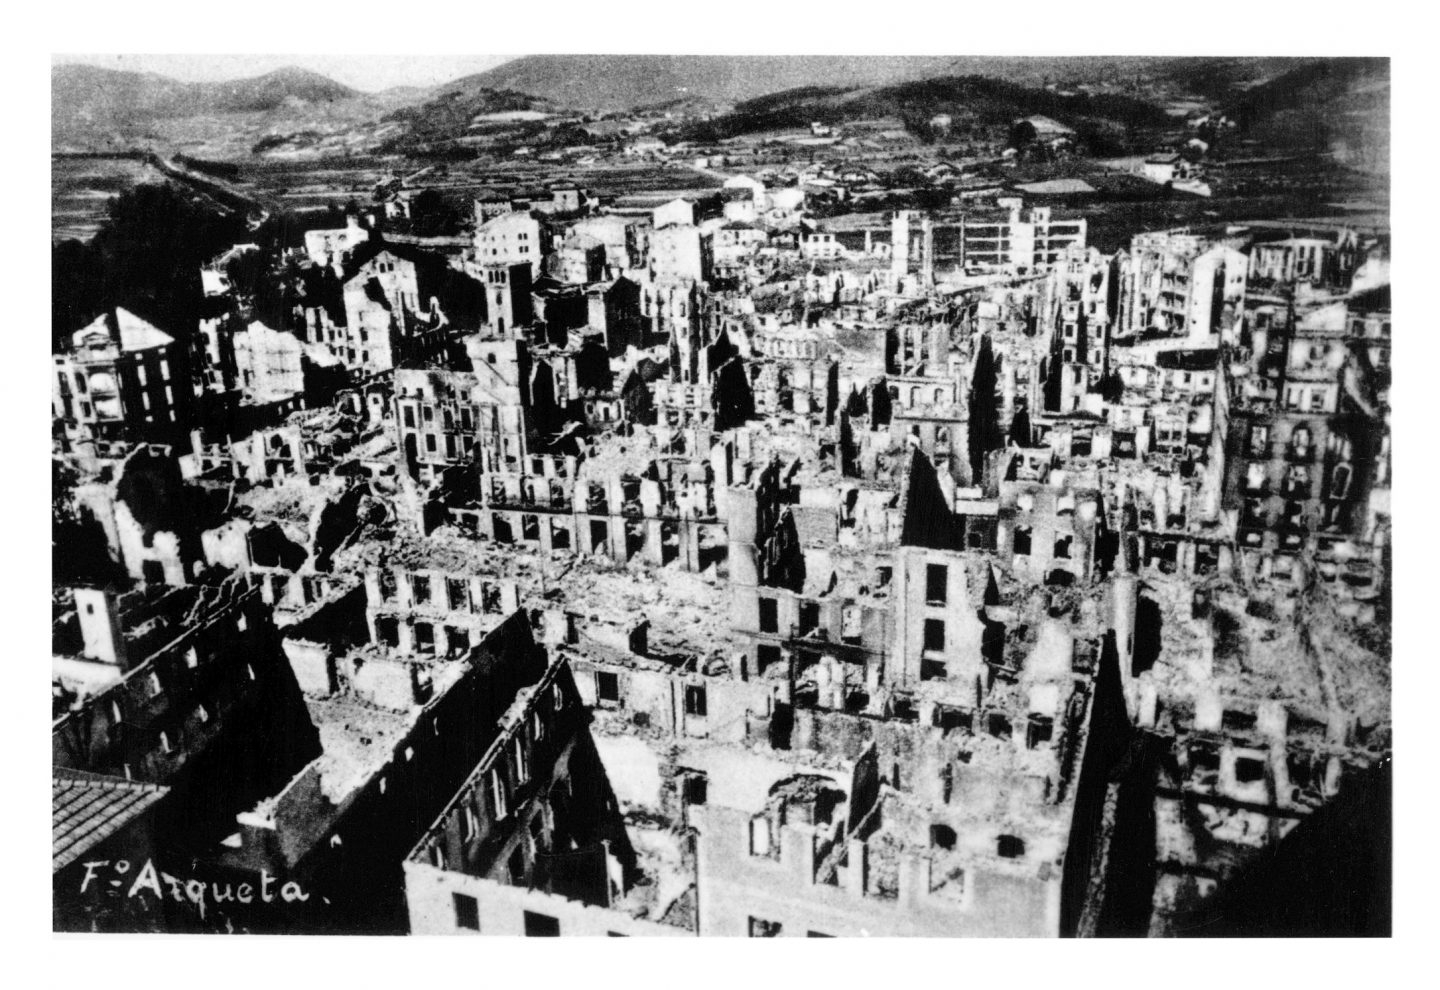 Fotografía en blanco y negro de la ciudad de Guernica tras el bombardeo. Fotografía del Centro de documentación sobre el Bombardeo de Gernika. Museo de la Paz de Gernika.